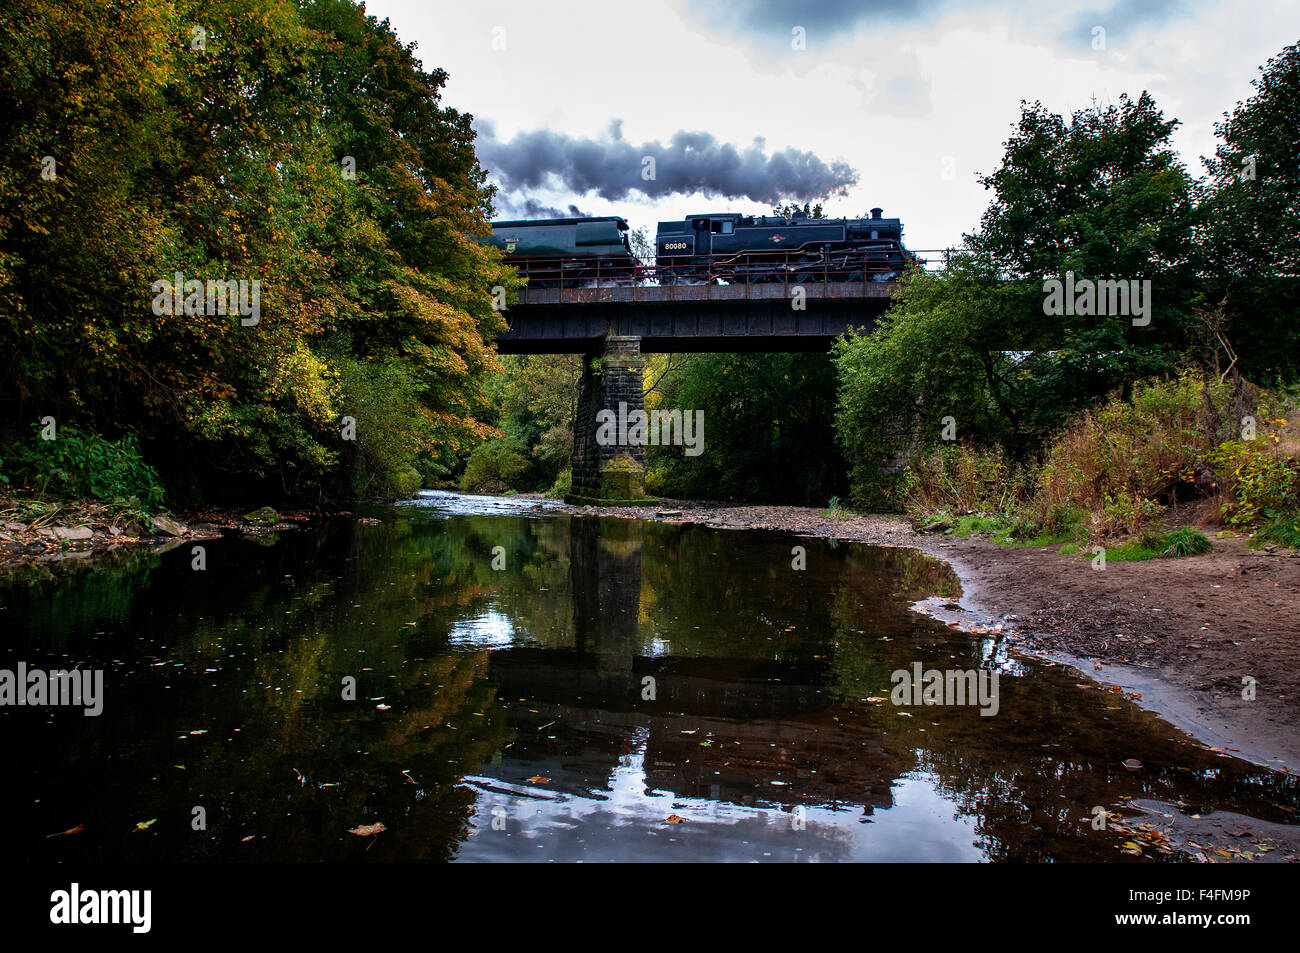 East Lancashire, fer vapeur Automne Gala. Photo par Paul Heyes, samedi 17 octobre 2015. Banque D'Images